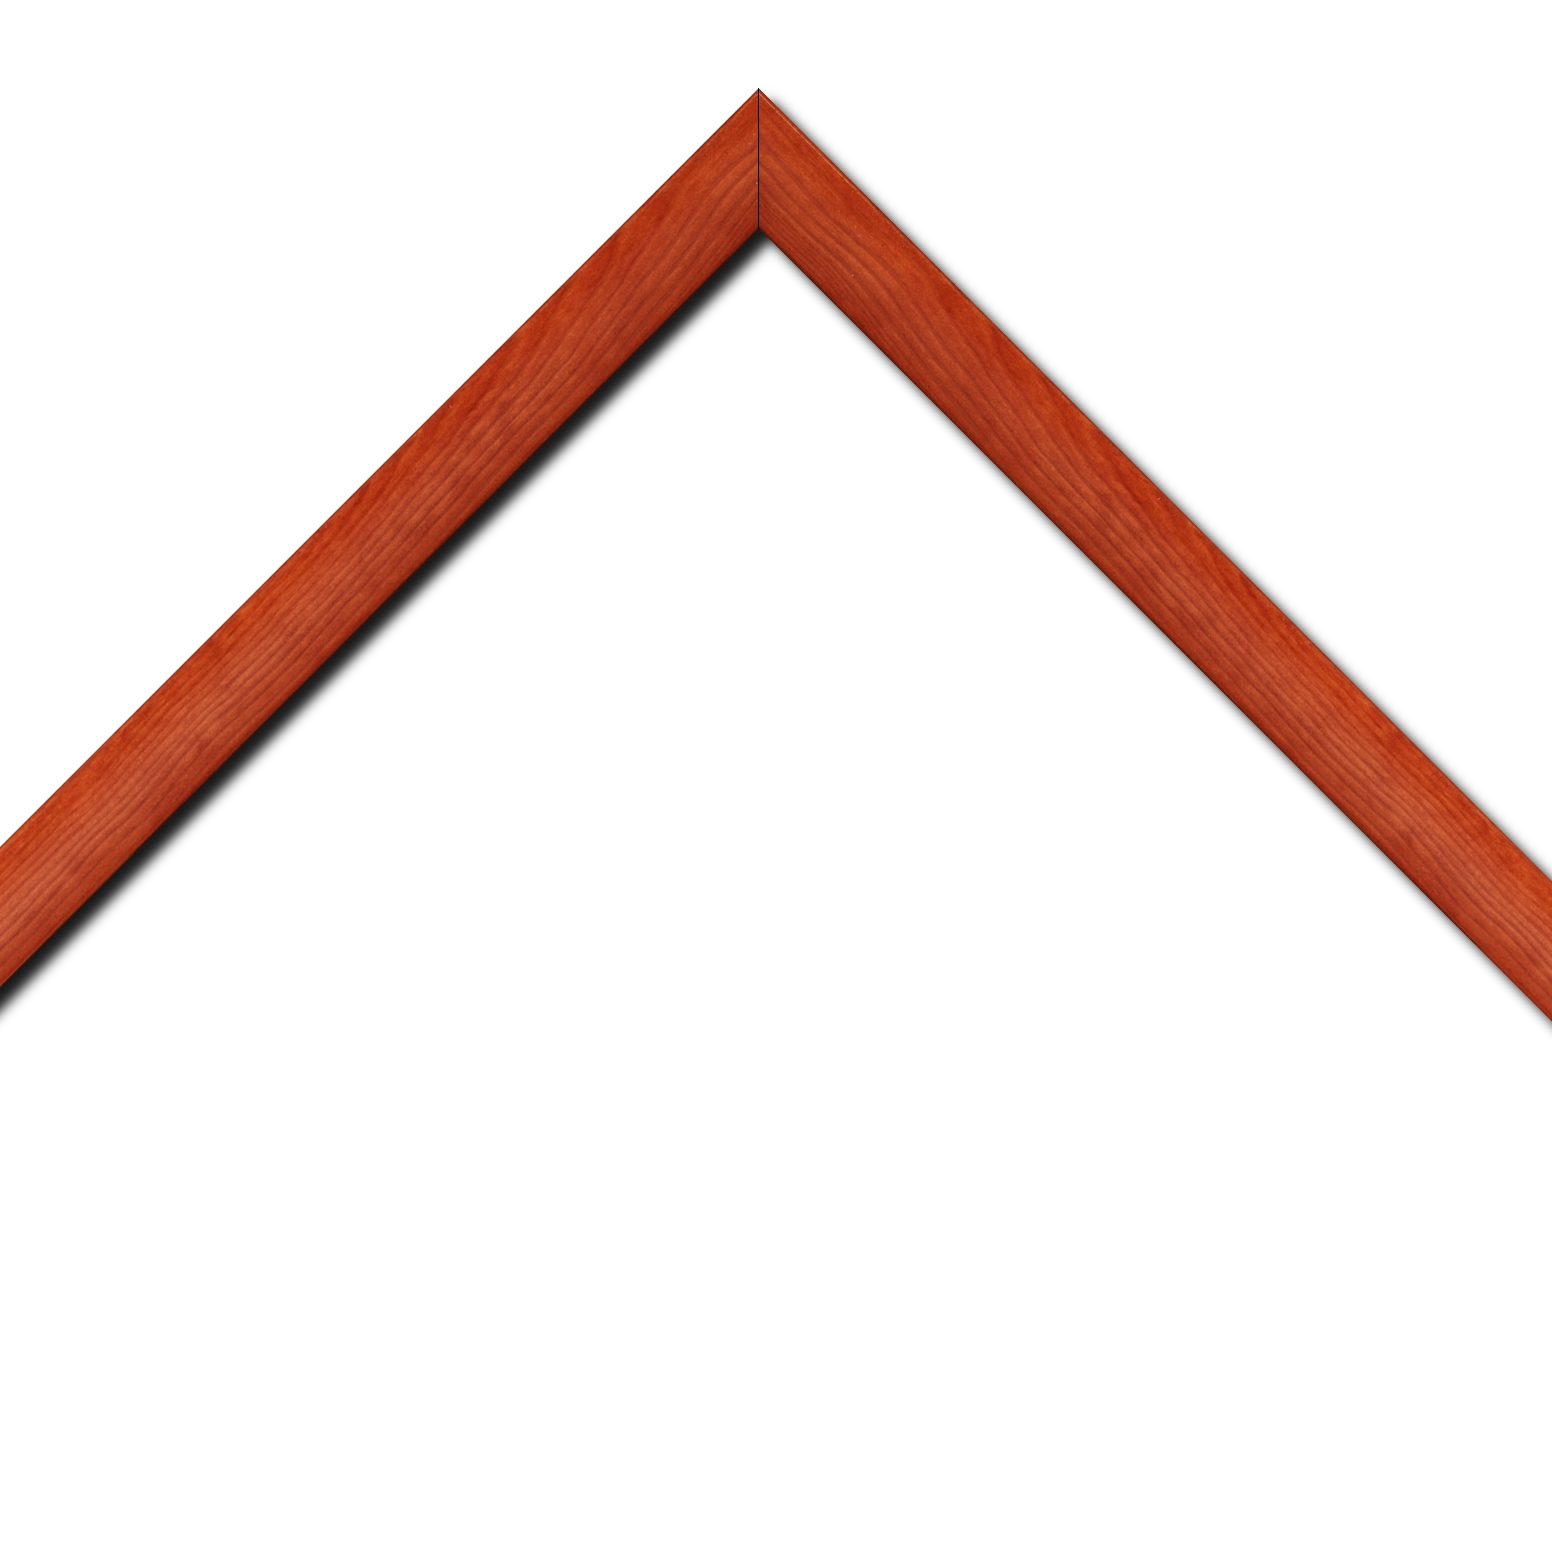 Baguette bois profil arrondi en pente plongeant largeur 2.4cm couleur orange finition vernis brillant,veine du bois  apparent (pin) ,